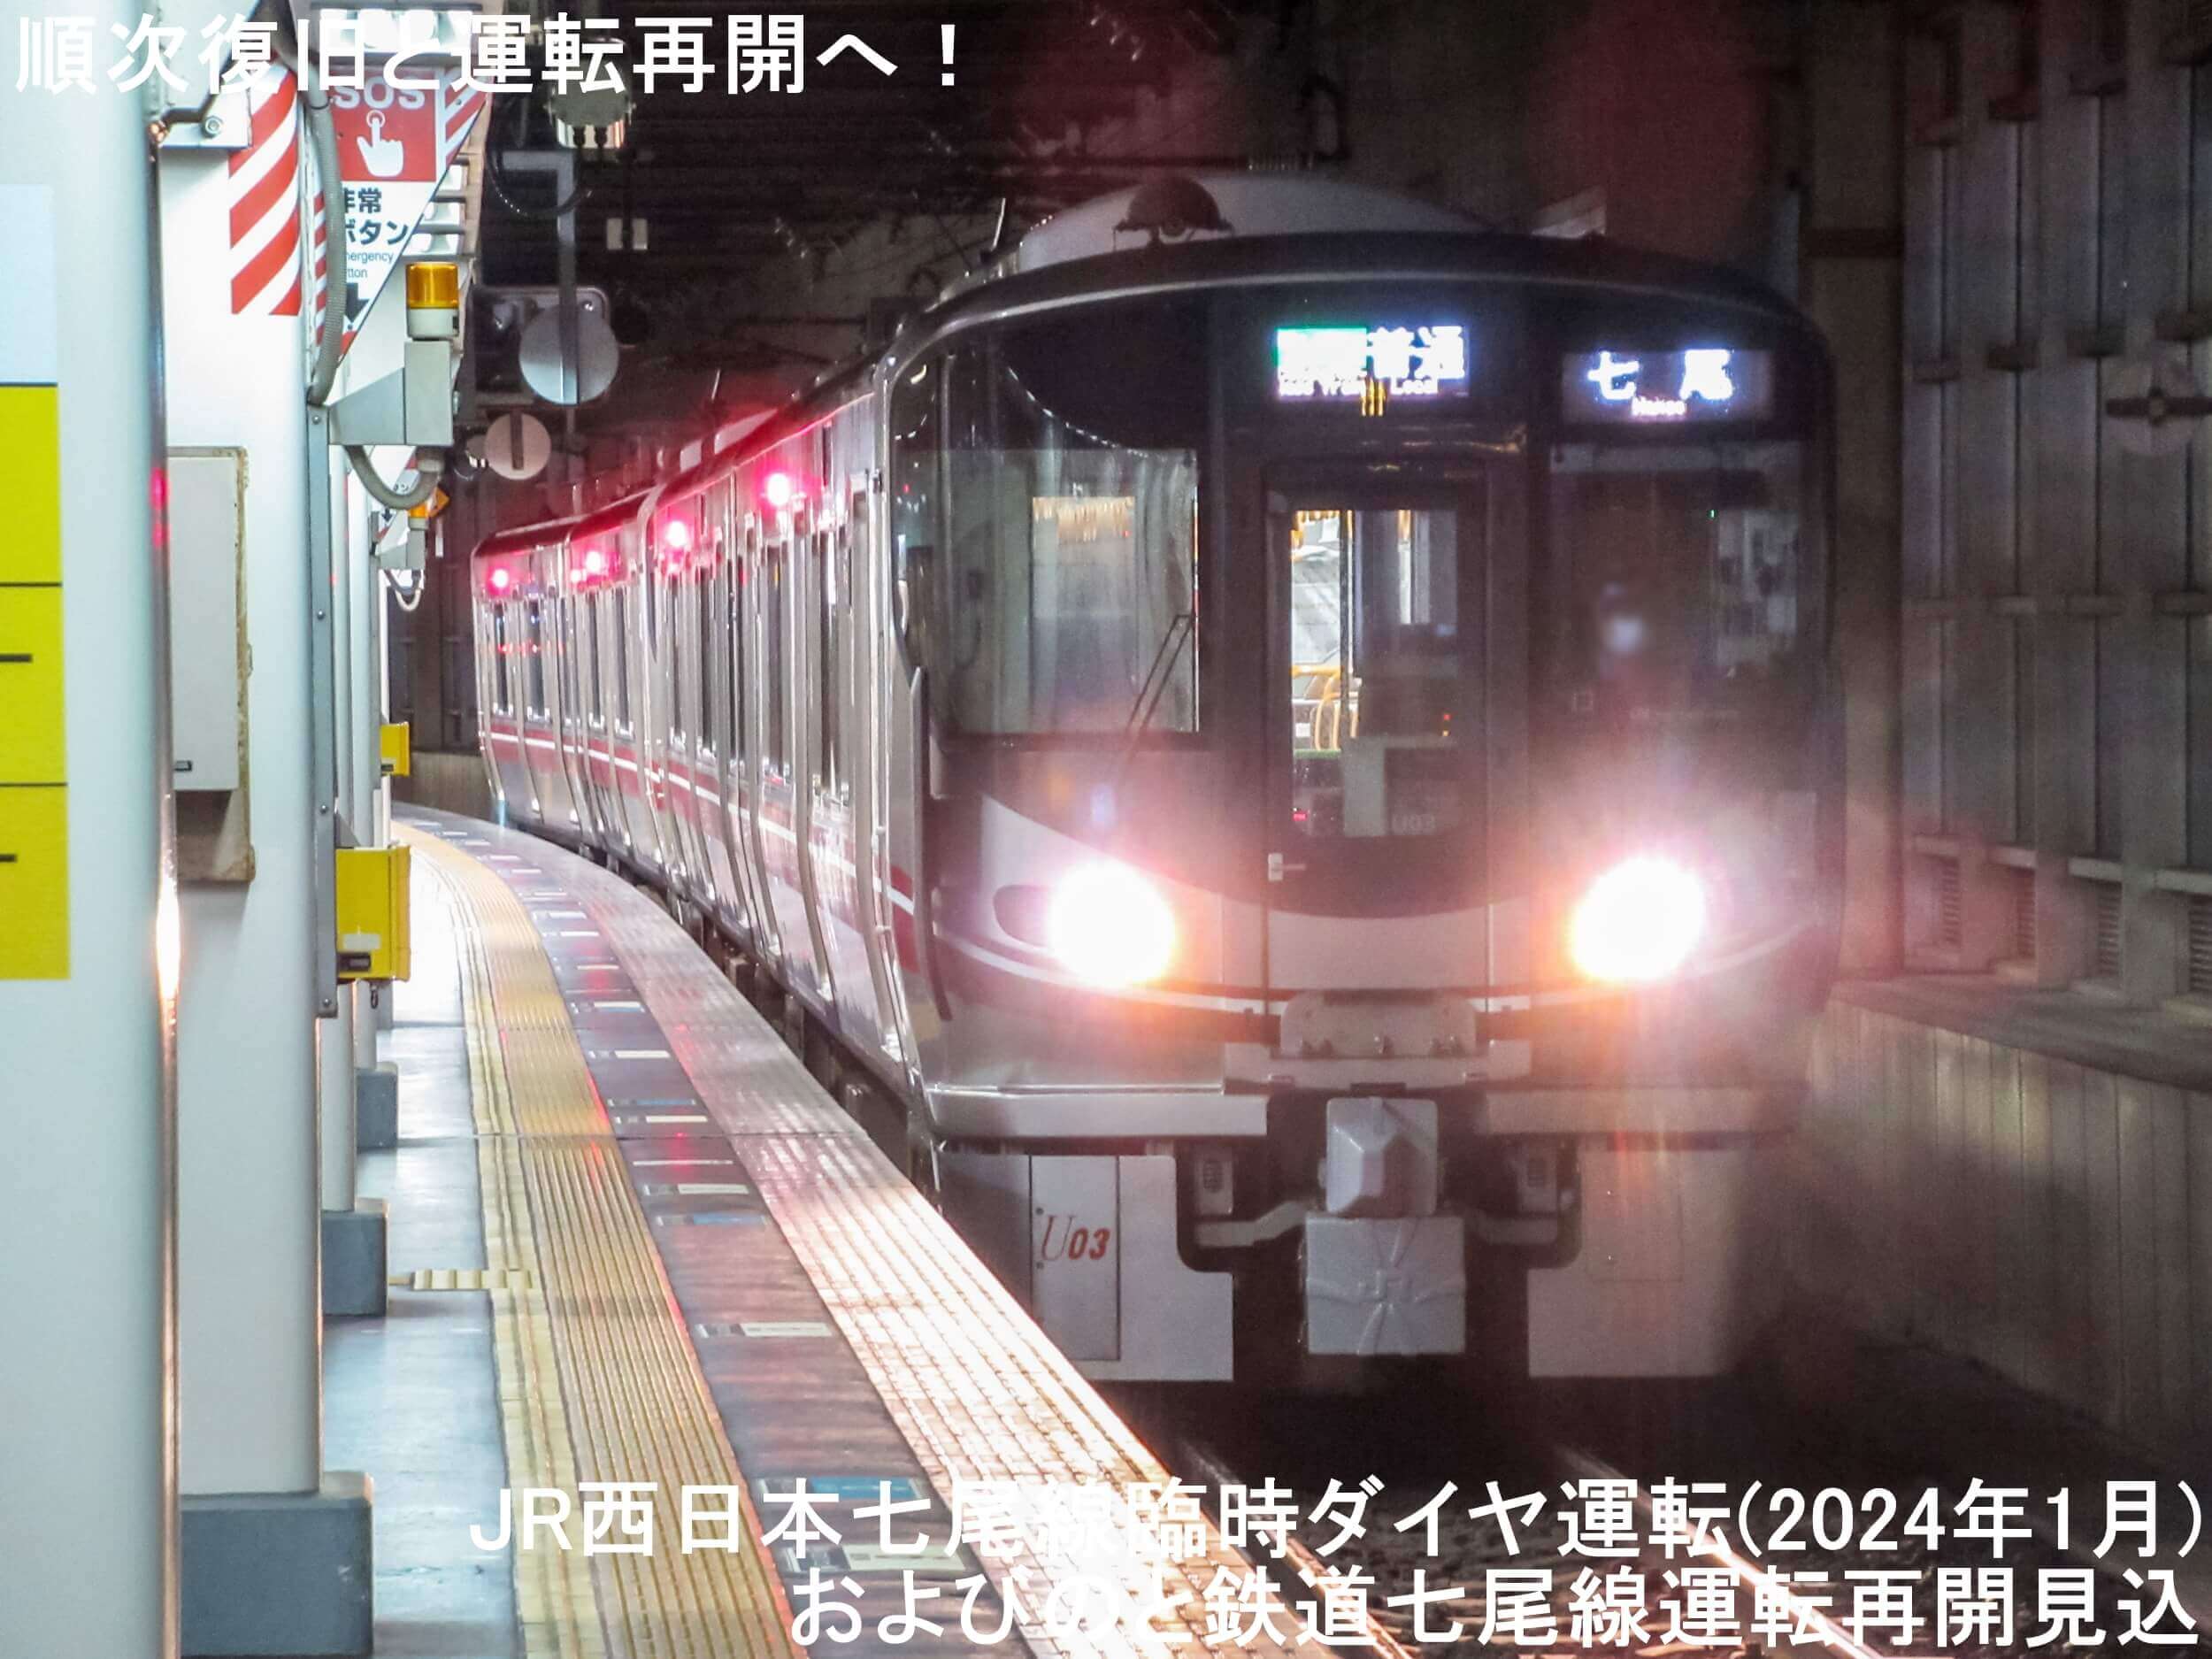 順次復旧と運転再開へ！　JR西日本七尾線臨時ダイヤ運転(2024年1月)およびのと鉄道七尾線運転再開見込